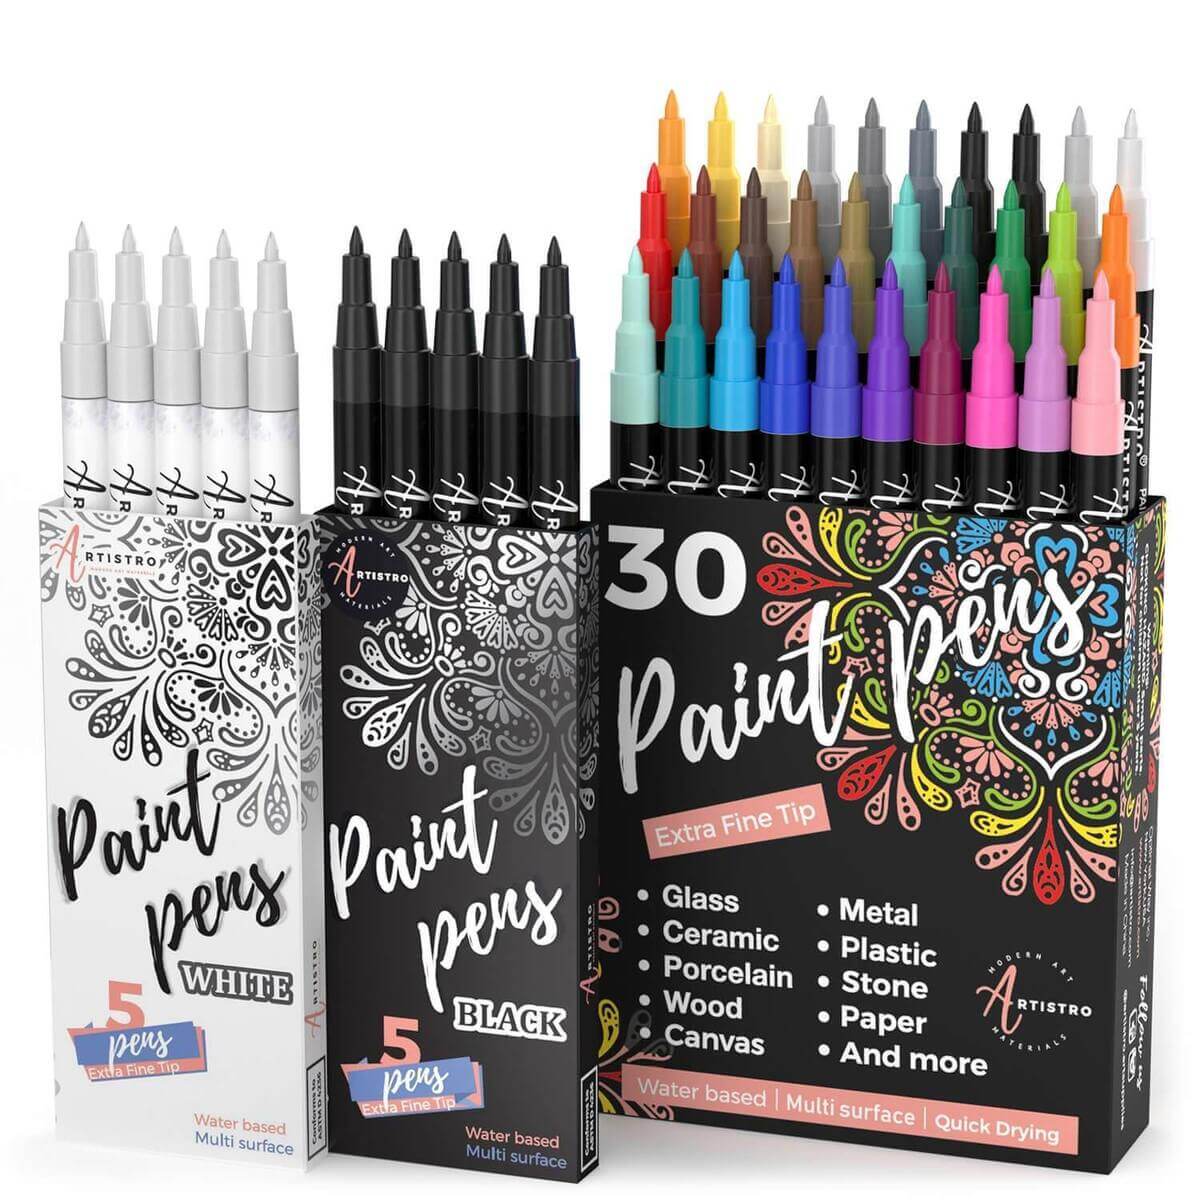 Artistro Paint Pen Art Supply Bundle: Special Colored Marker Set